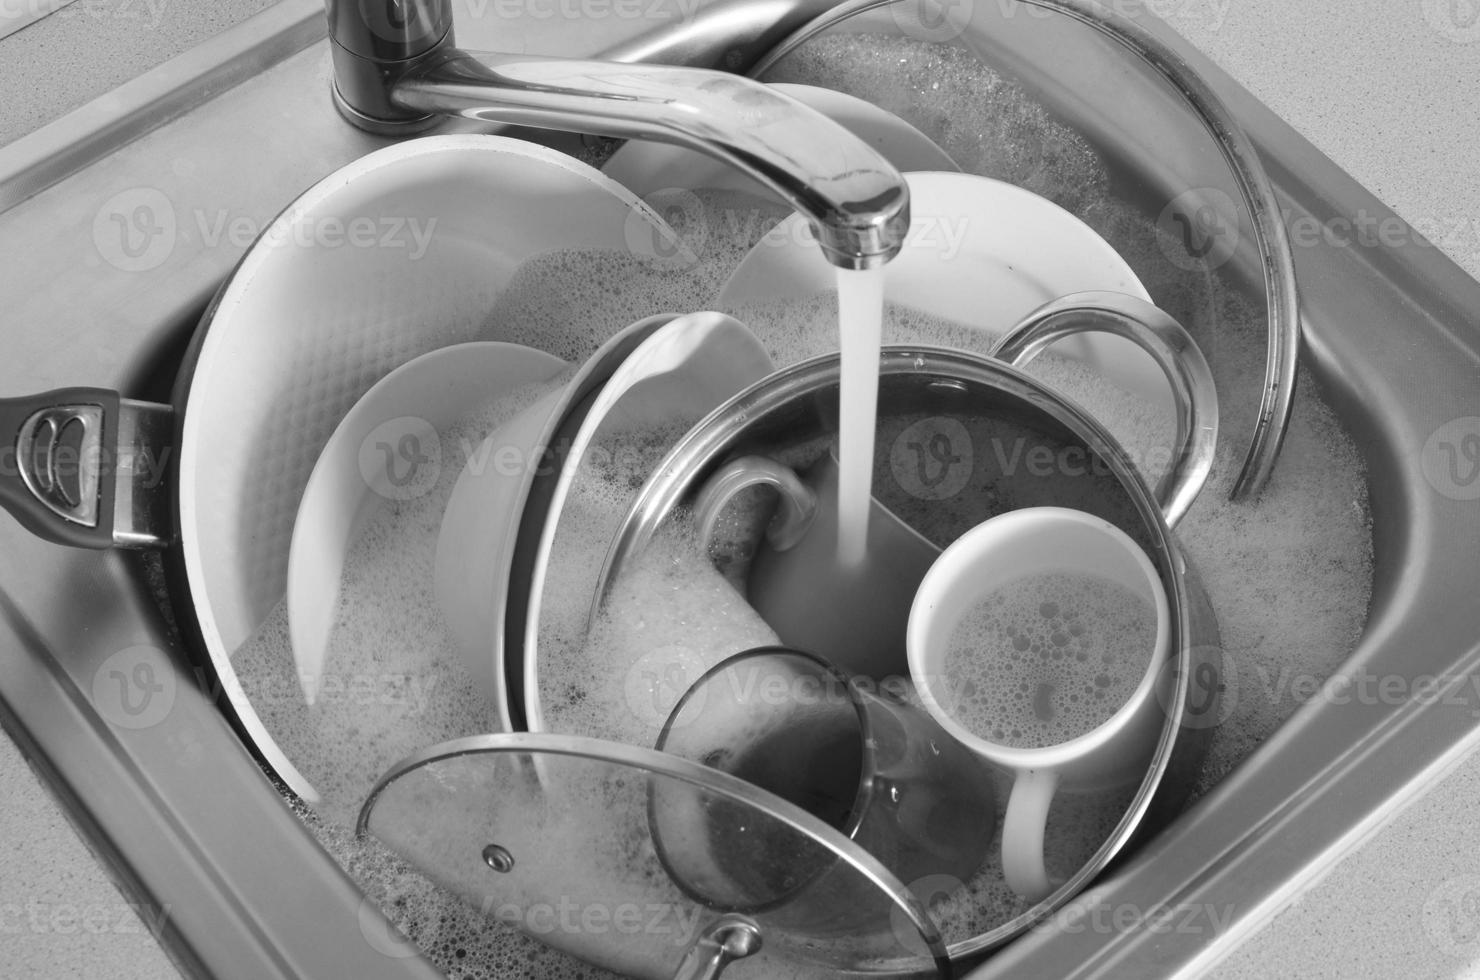 platos sucios y electrodomésticos de cocina sin lavar yacen en agua de espuma bajo un grifo de la cocina foto